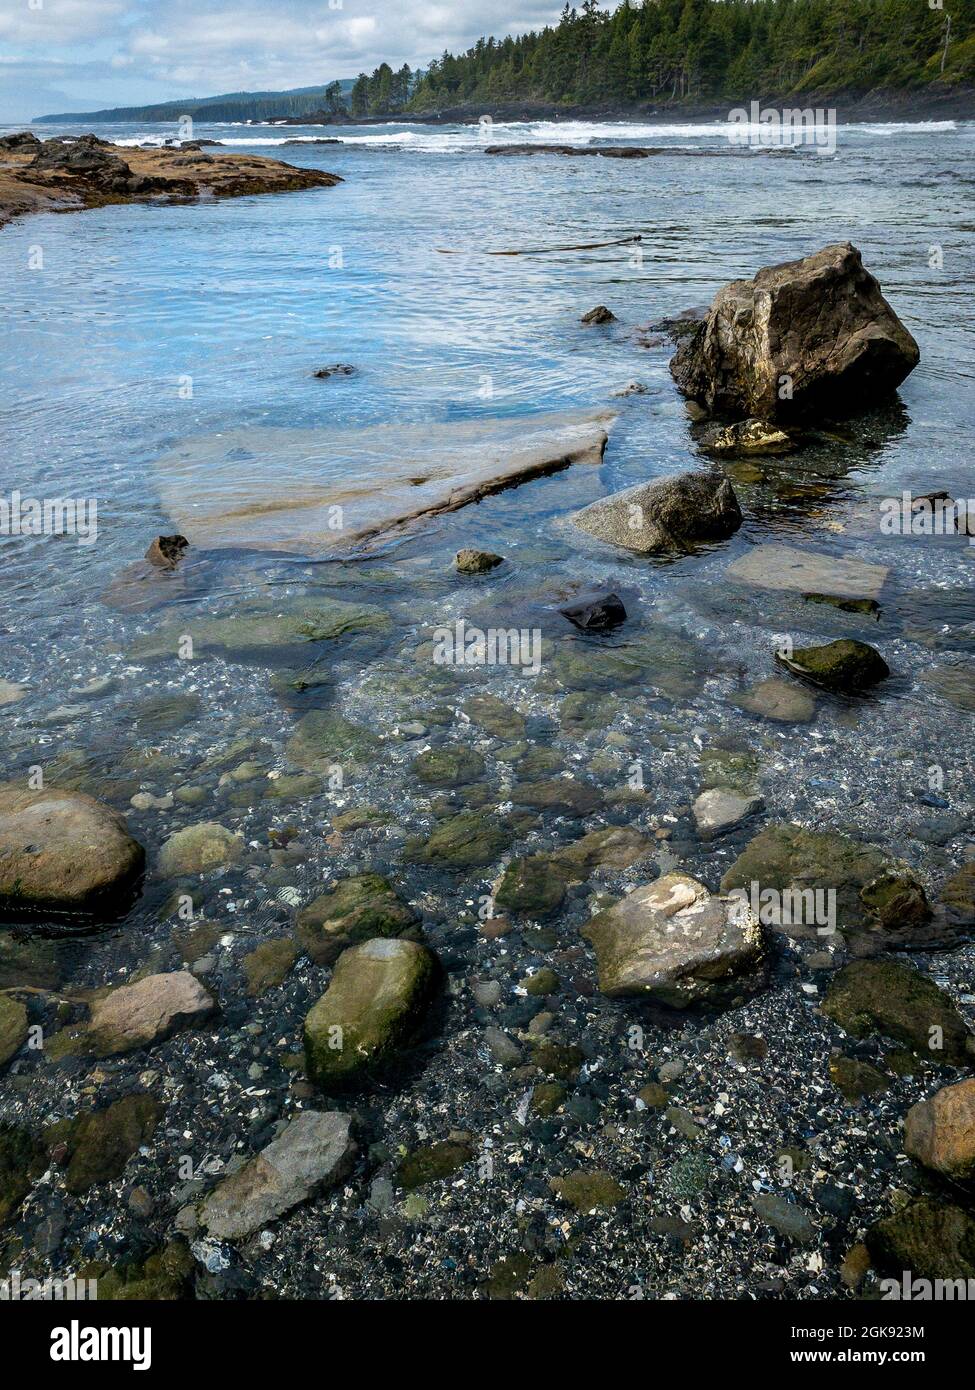 Marée basse et eau claire lors d'une journée d'été ensoleillée à Botanical Beach, dans le parc provincial Juan de Fuca, sur la côte ouest de l'île de Vancouver, C.-B., Canada. Banque D'Images